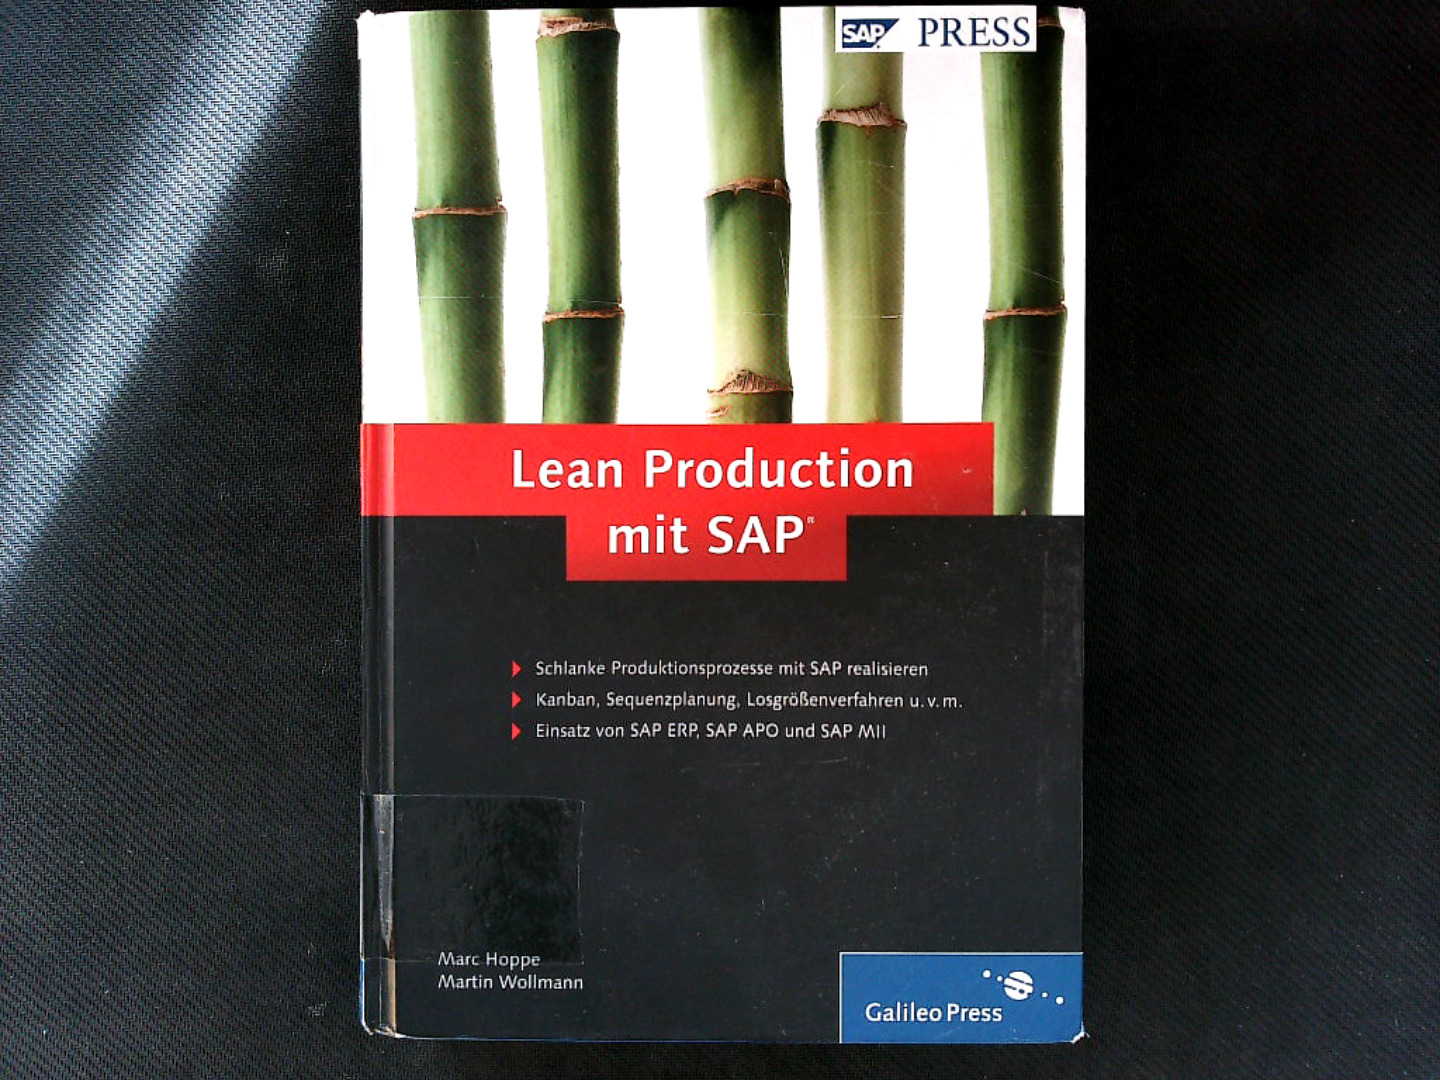 Lean Production mit SAP : schlanke Produktionsprozesse mit SAP realisieren ; Kanban, Sequenzplanung, Losgrößenverfahren u.v.m. ; Einsatz von SAP ERP, SAP APO und SAP MII. SAP Press. - Hoppe, Marc und Martin Wollmann